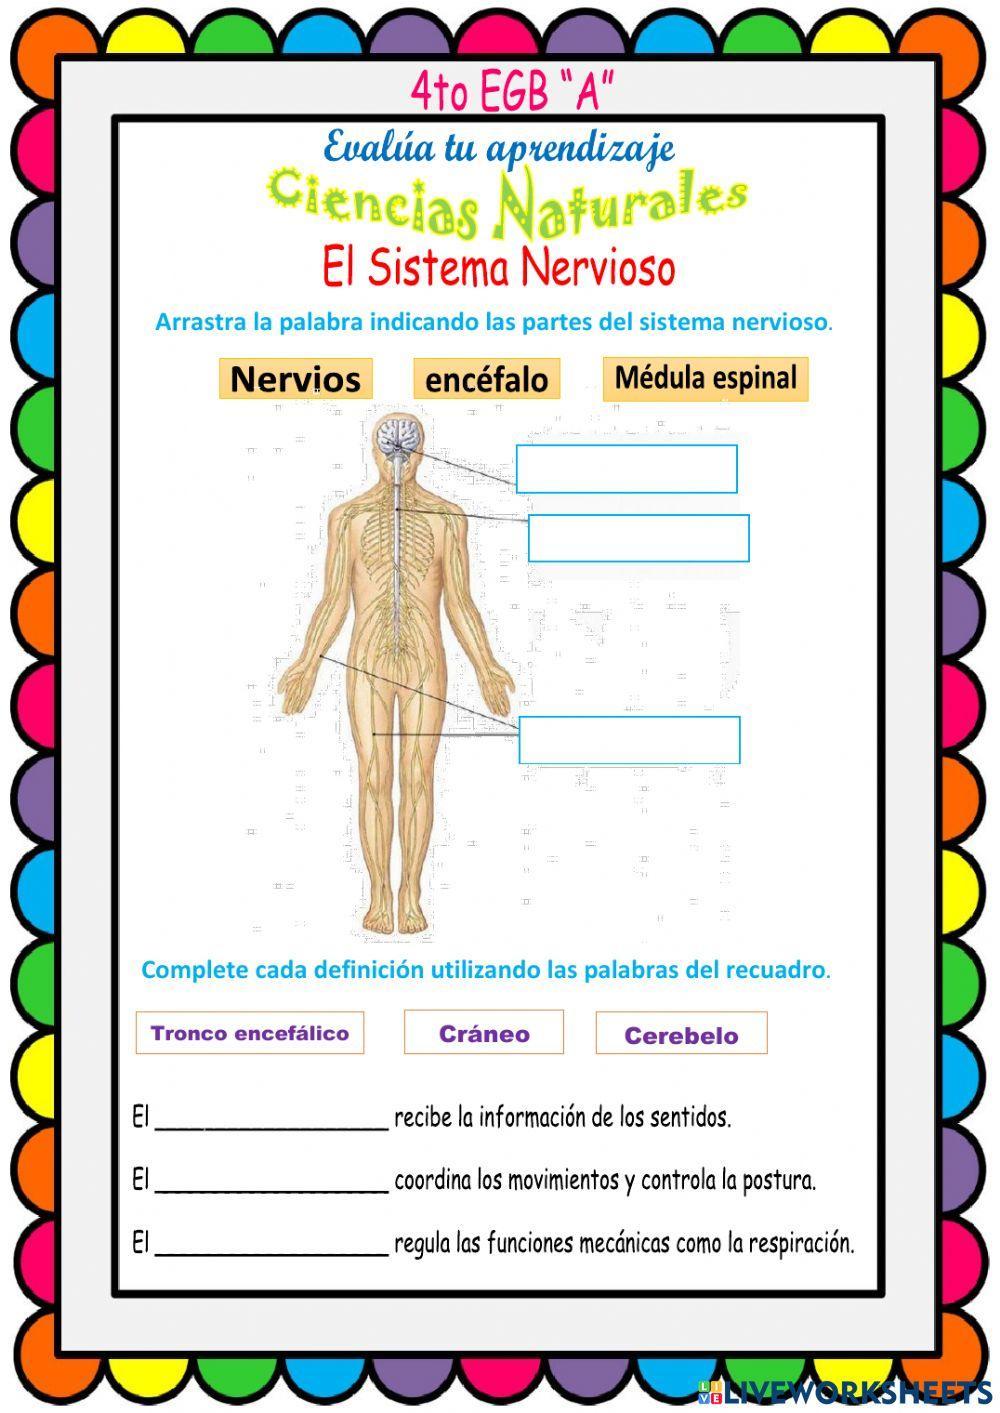 El Sistema Nervioso, partes y funciones